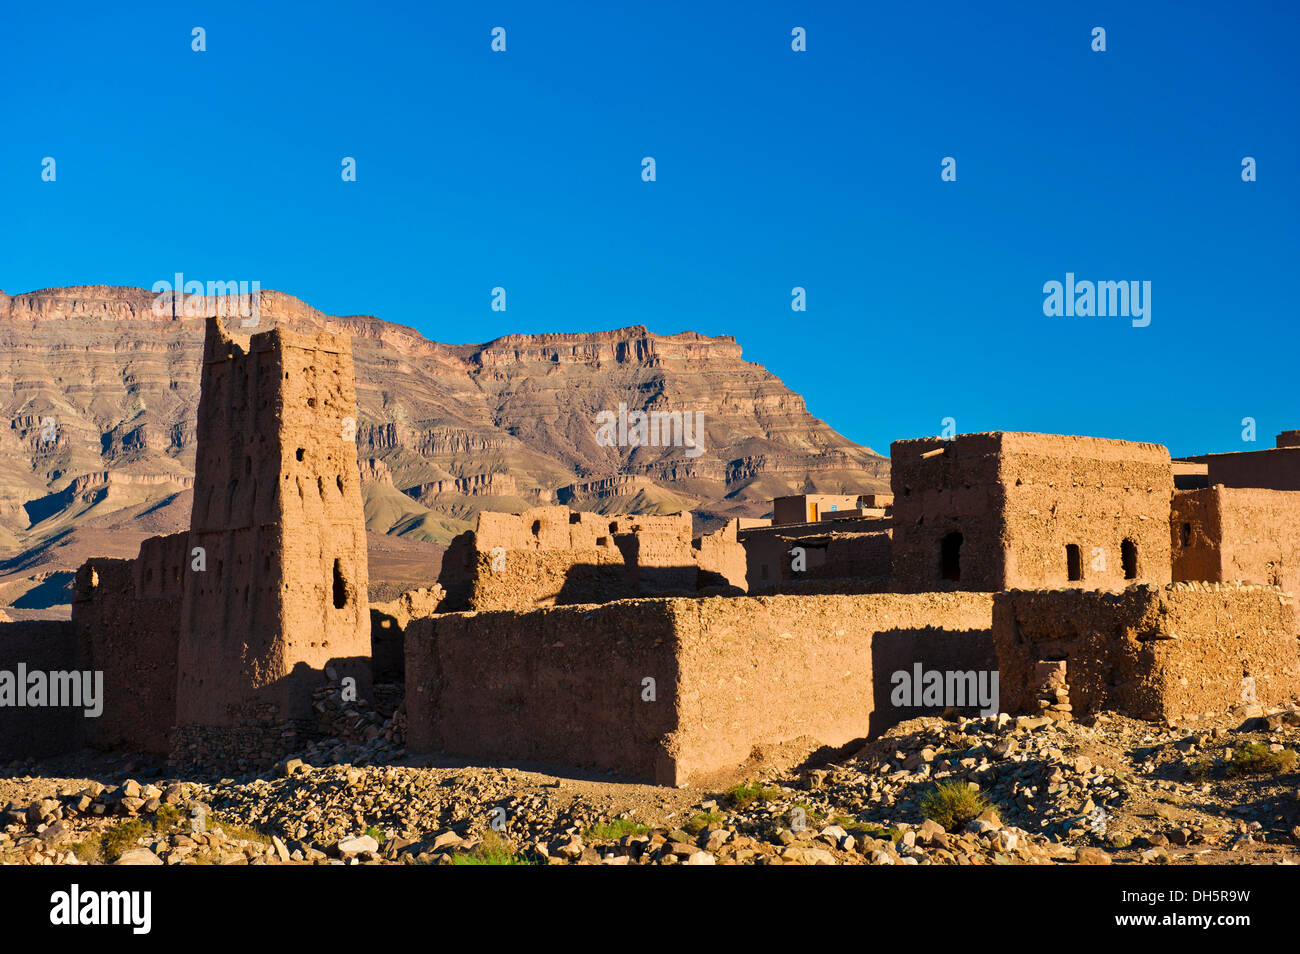 Kasbah à l'abandon, forteresse de brique de boue du peuple berbère, la montagne de la table le djebel Kissane au dos, vallée du Drâa, sud du Maroc Banque D'Images